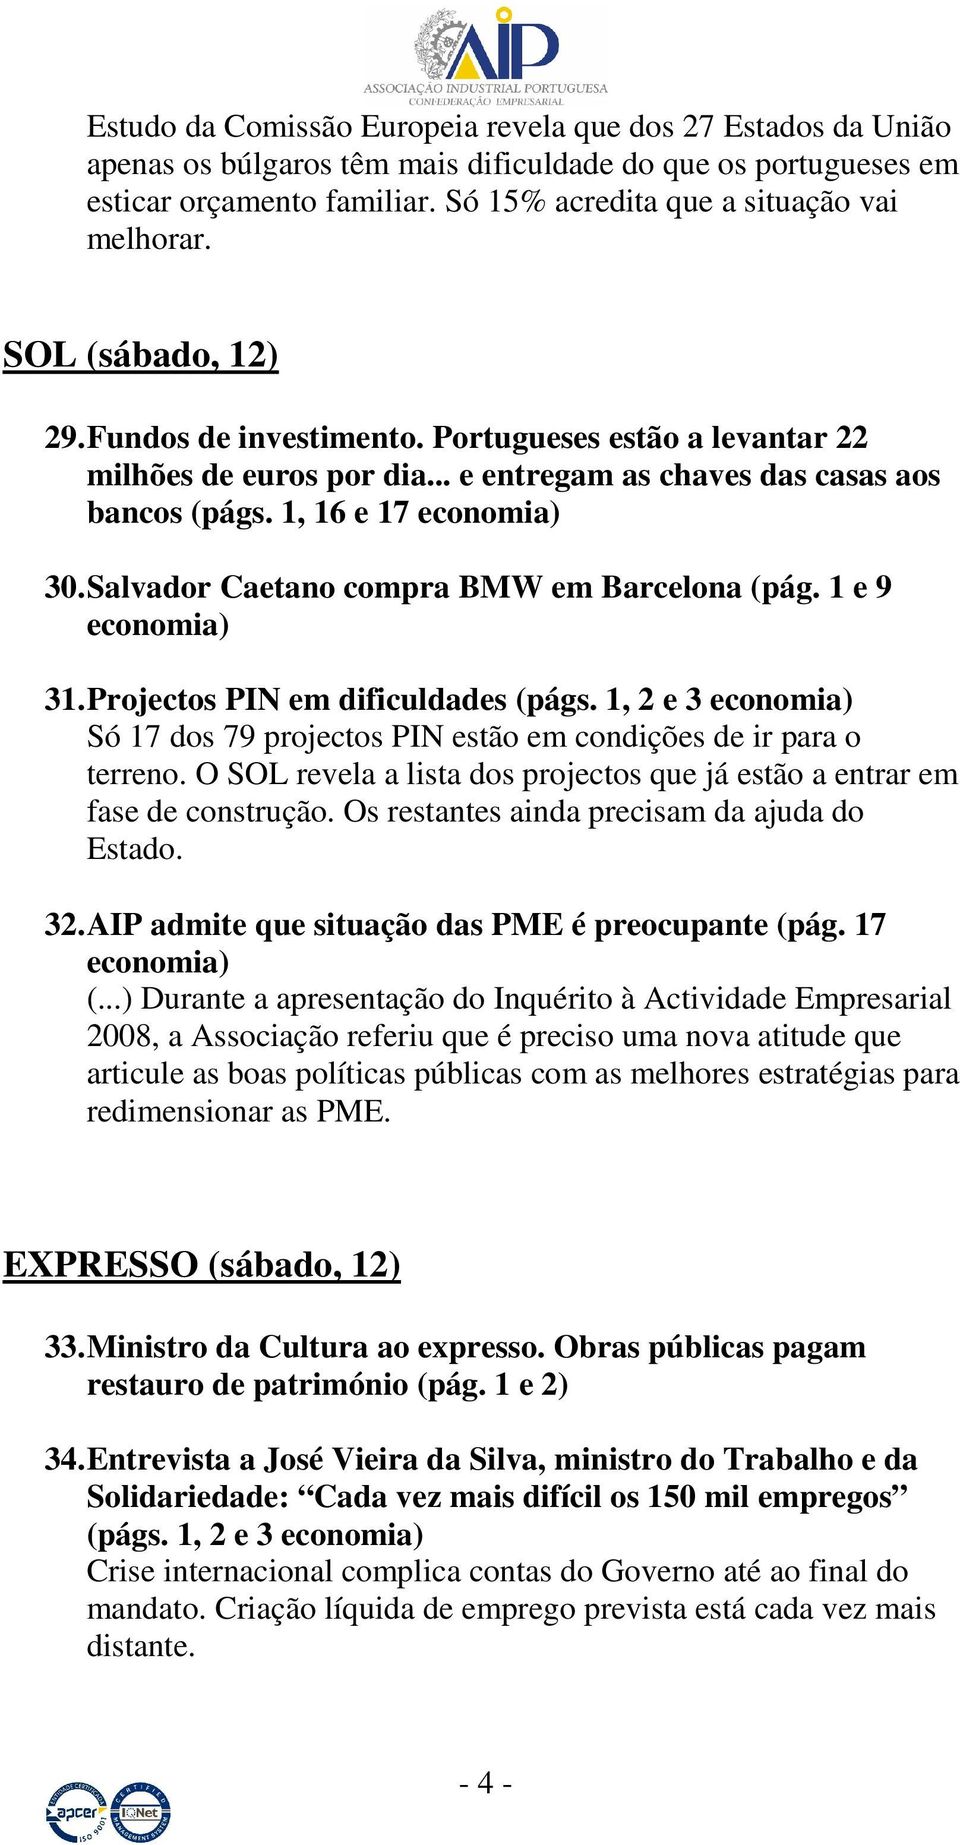 Salvador Caetano compra BMW em Barcelona (pág. 1 e 9 economia) 31. Projectos PIN em dificuldades (págs. 1, 2 e 3 economia) Só 17 dos 79 projectos PIN estão em condições de ir para o terreno.